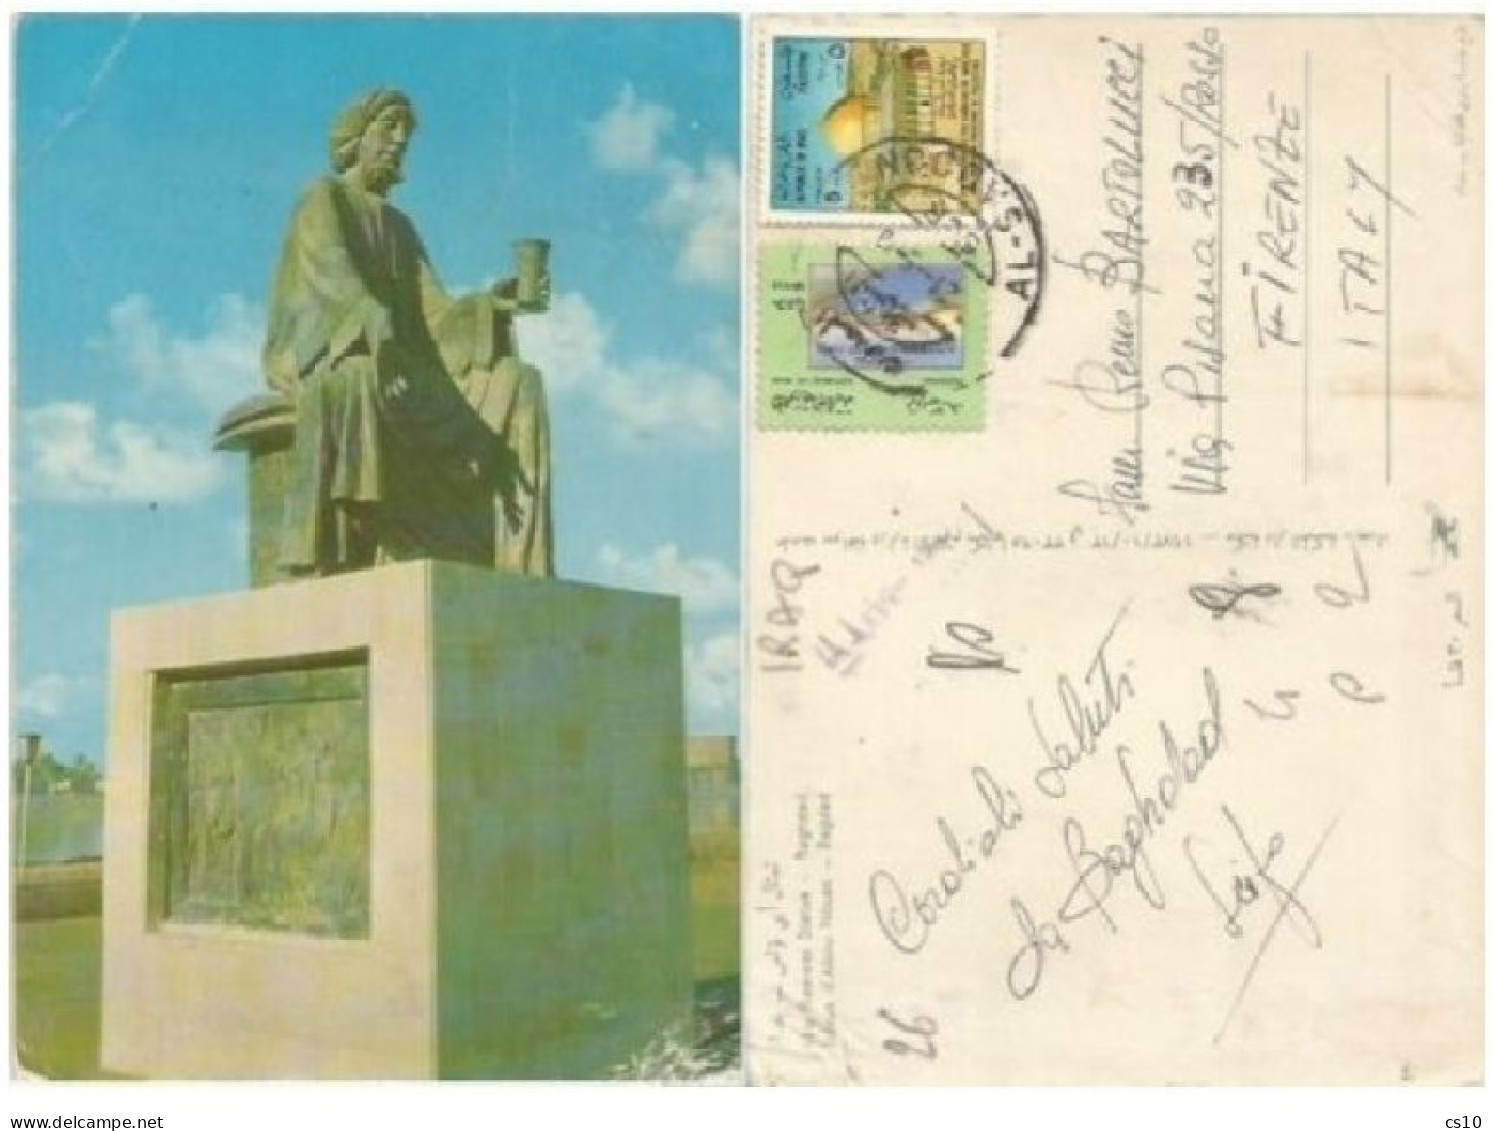 Iraq Irak Baghdad Abu Nawwas Statue Pcard Useed 21sep1978 - Iraq